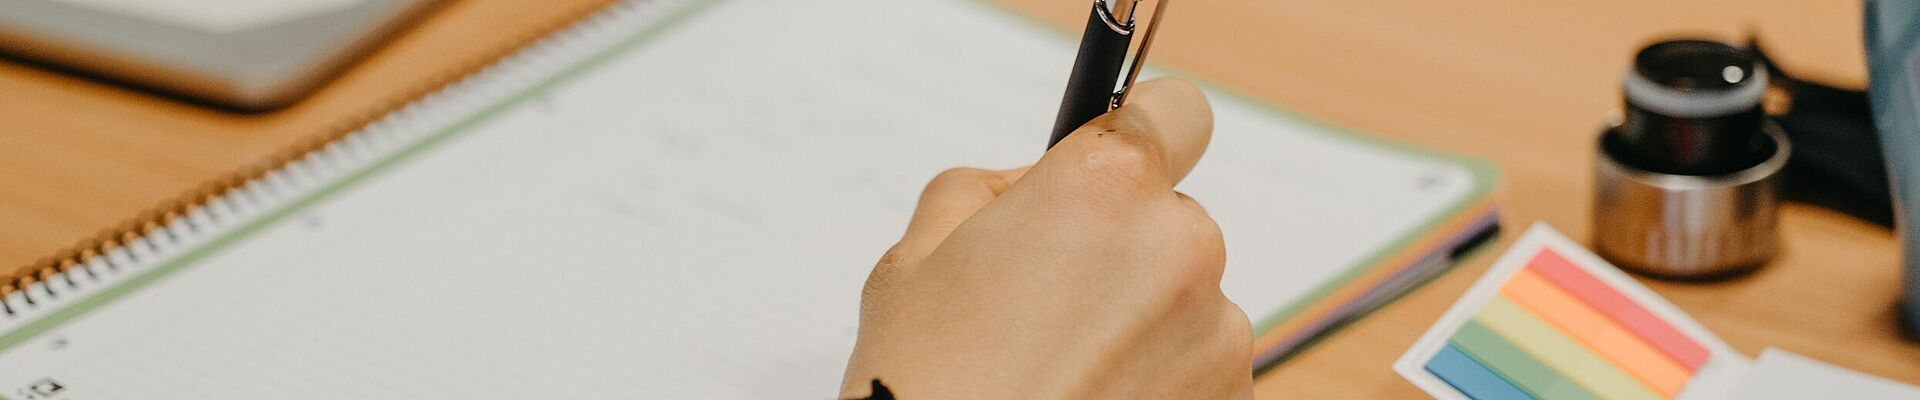 Nahaufnahme Hand hält Stift und Schreibblock